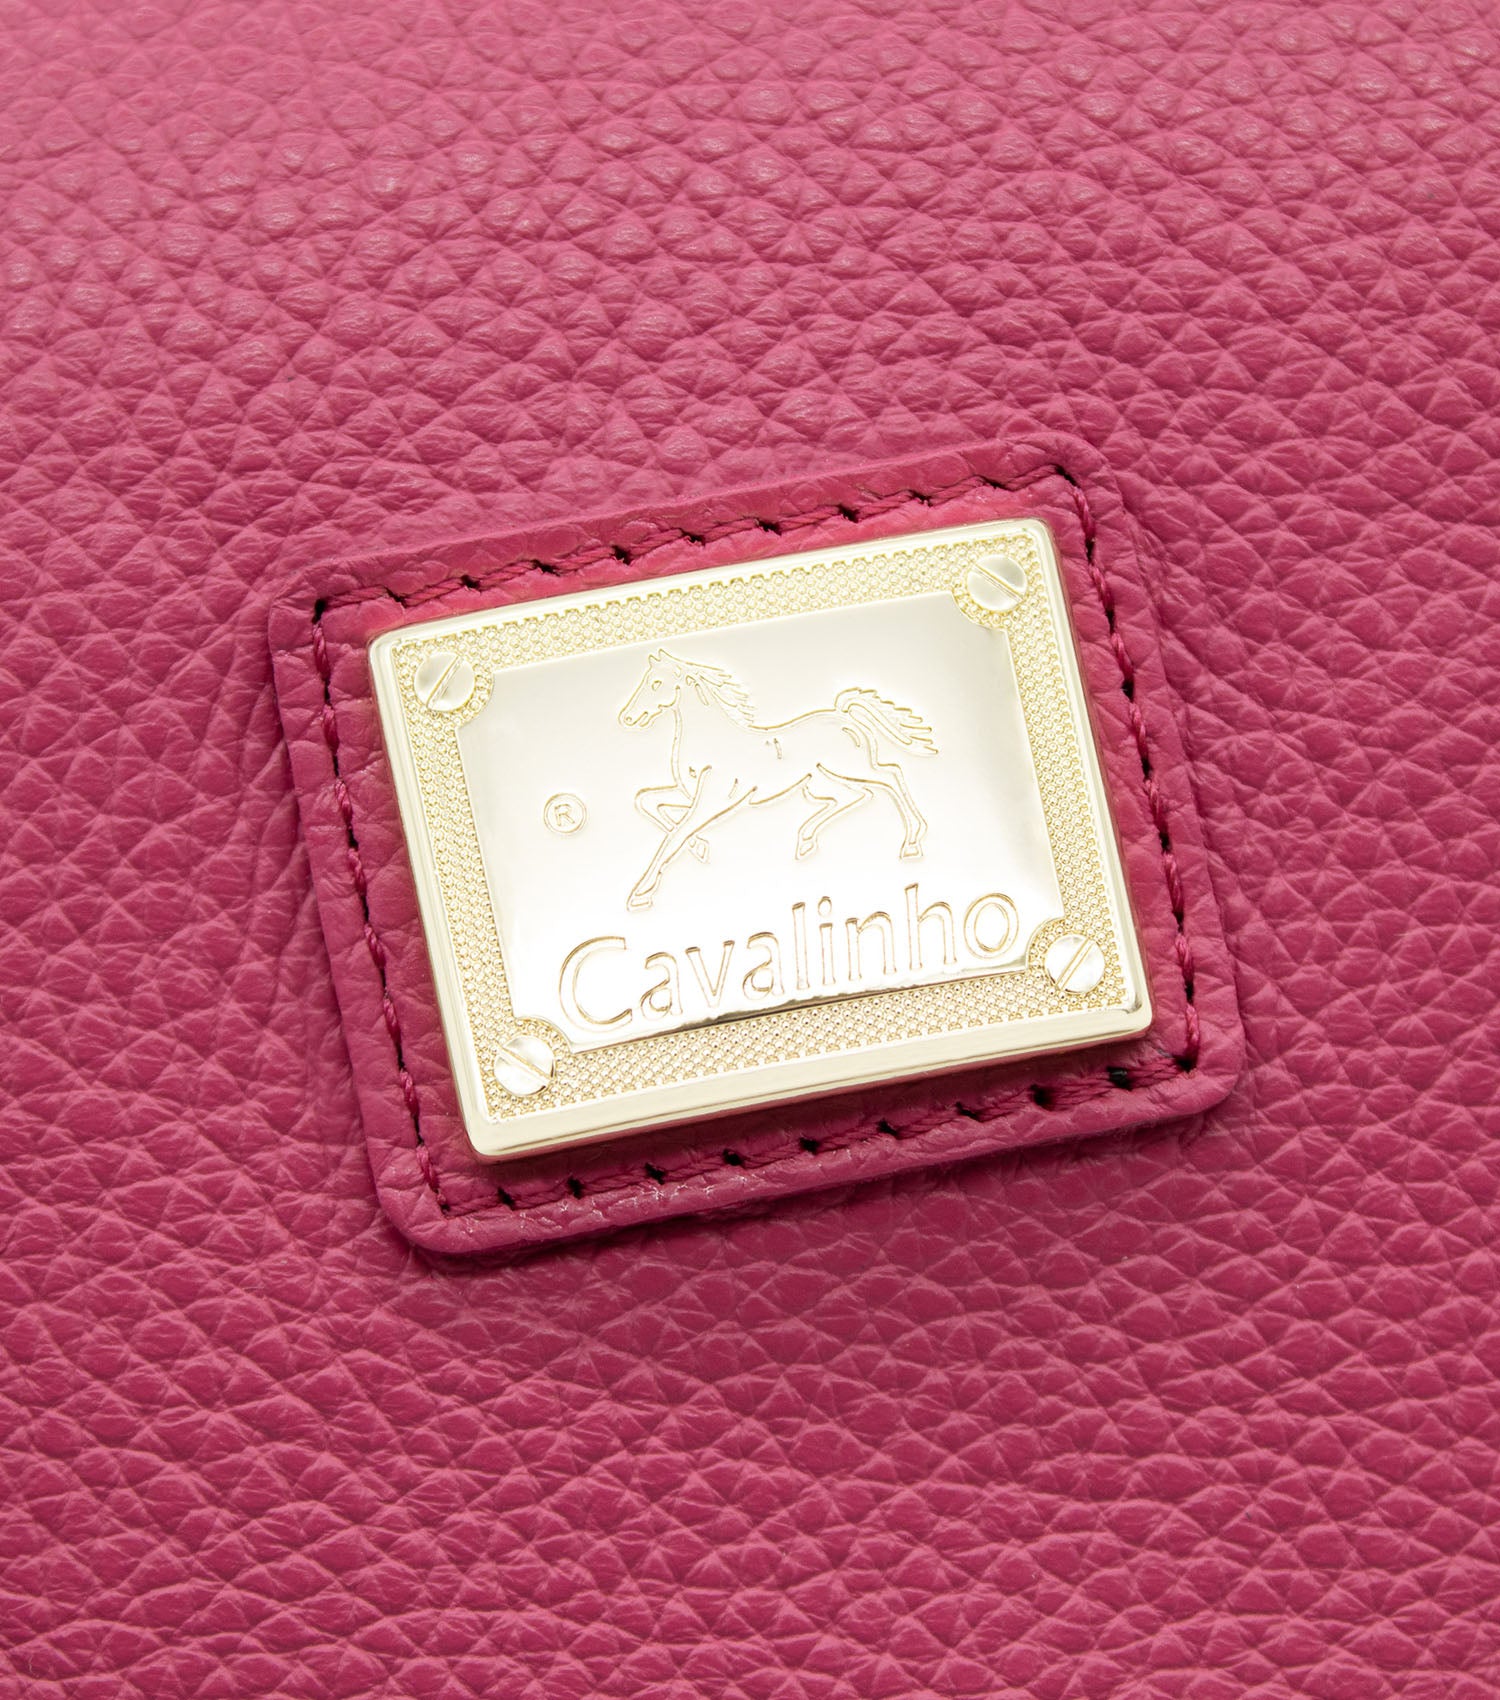 Cavalinho Muse Leather Handbag - HotPink - 18300508.18_P06